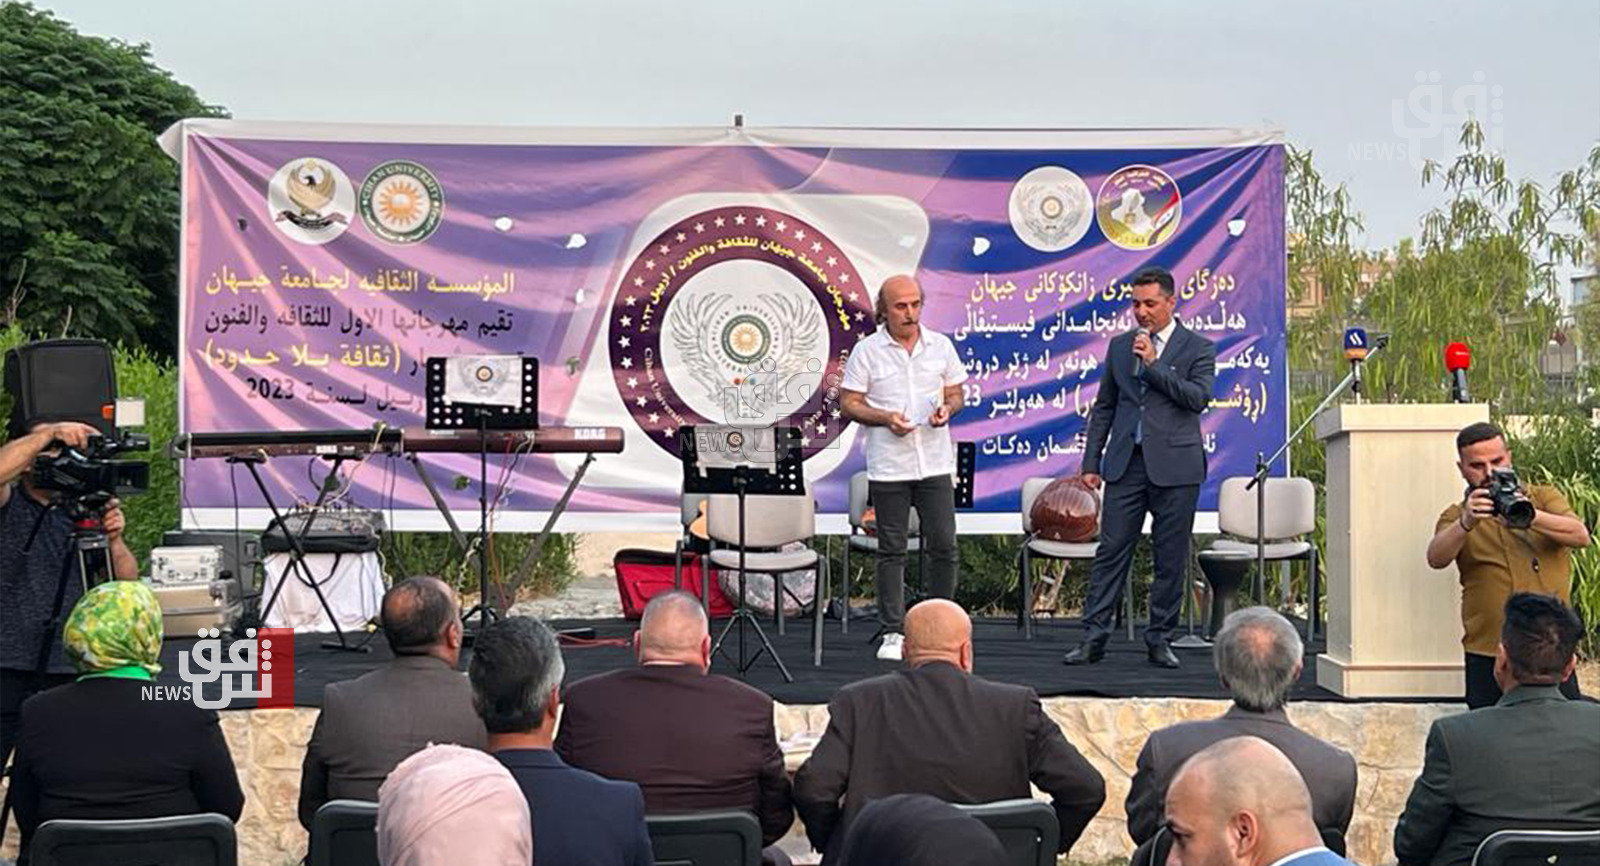 الأول من نوعه.. أربيل تحتضن مهرجان "ثقافة بلا حدود" لمختلف المكونات العراقية (صور)